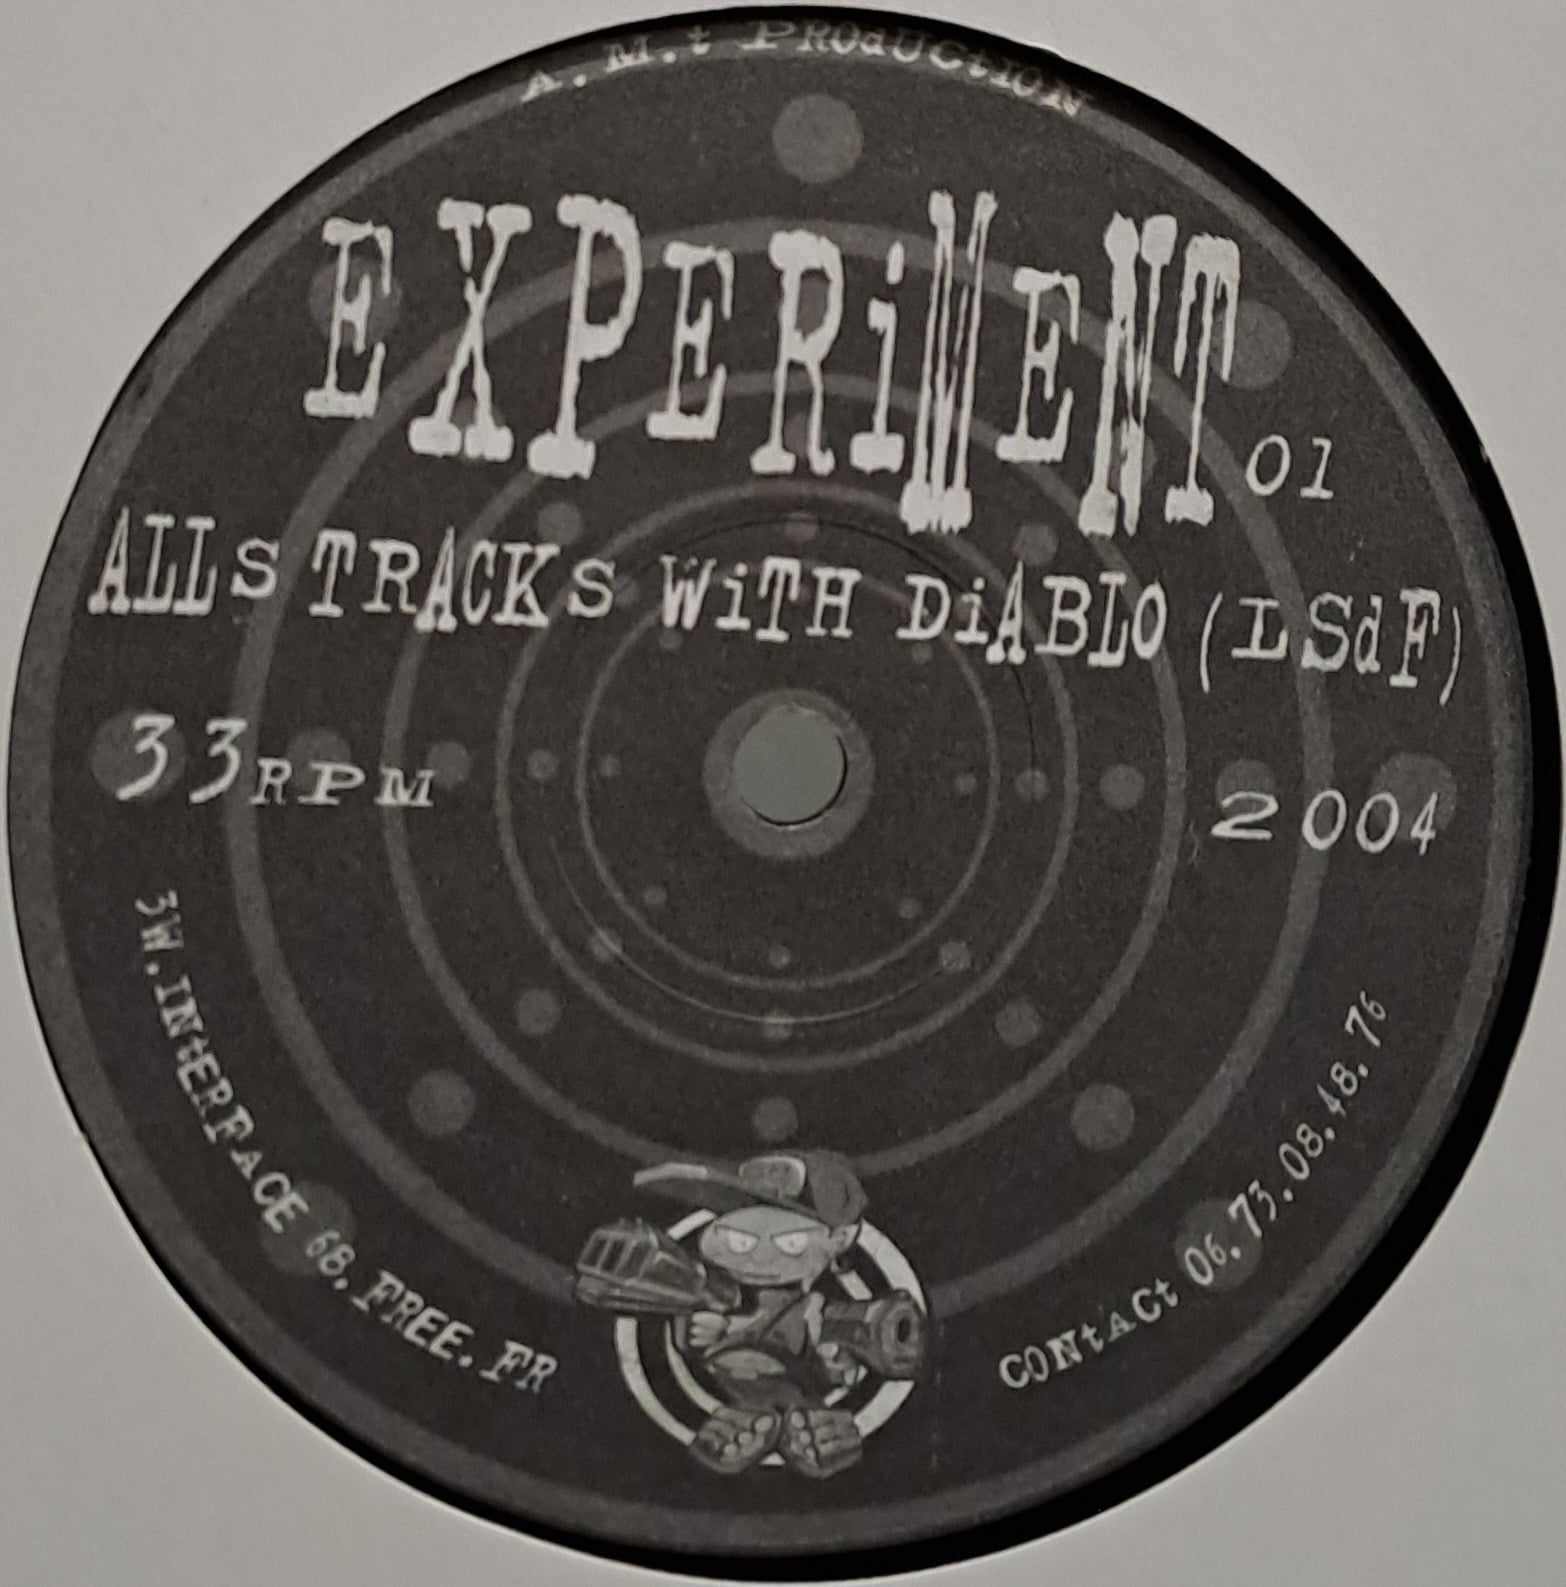 Experiment 01 - vinyle techno